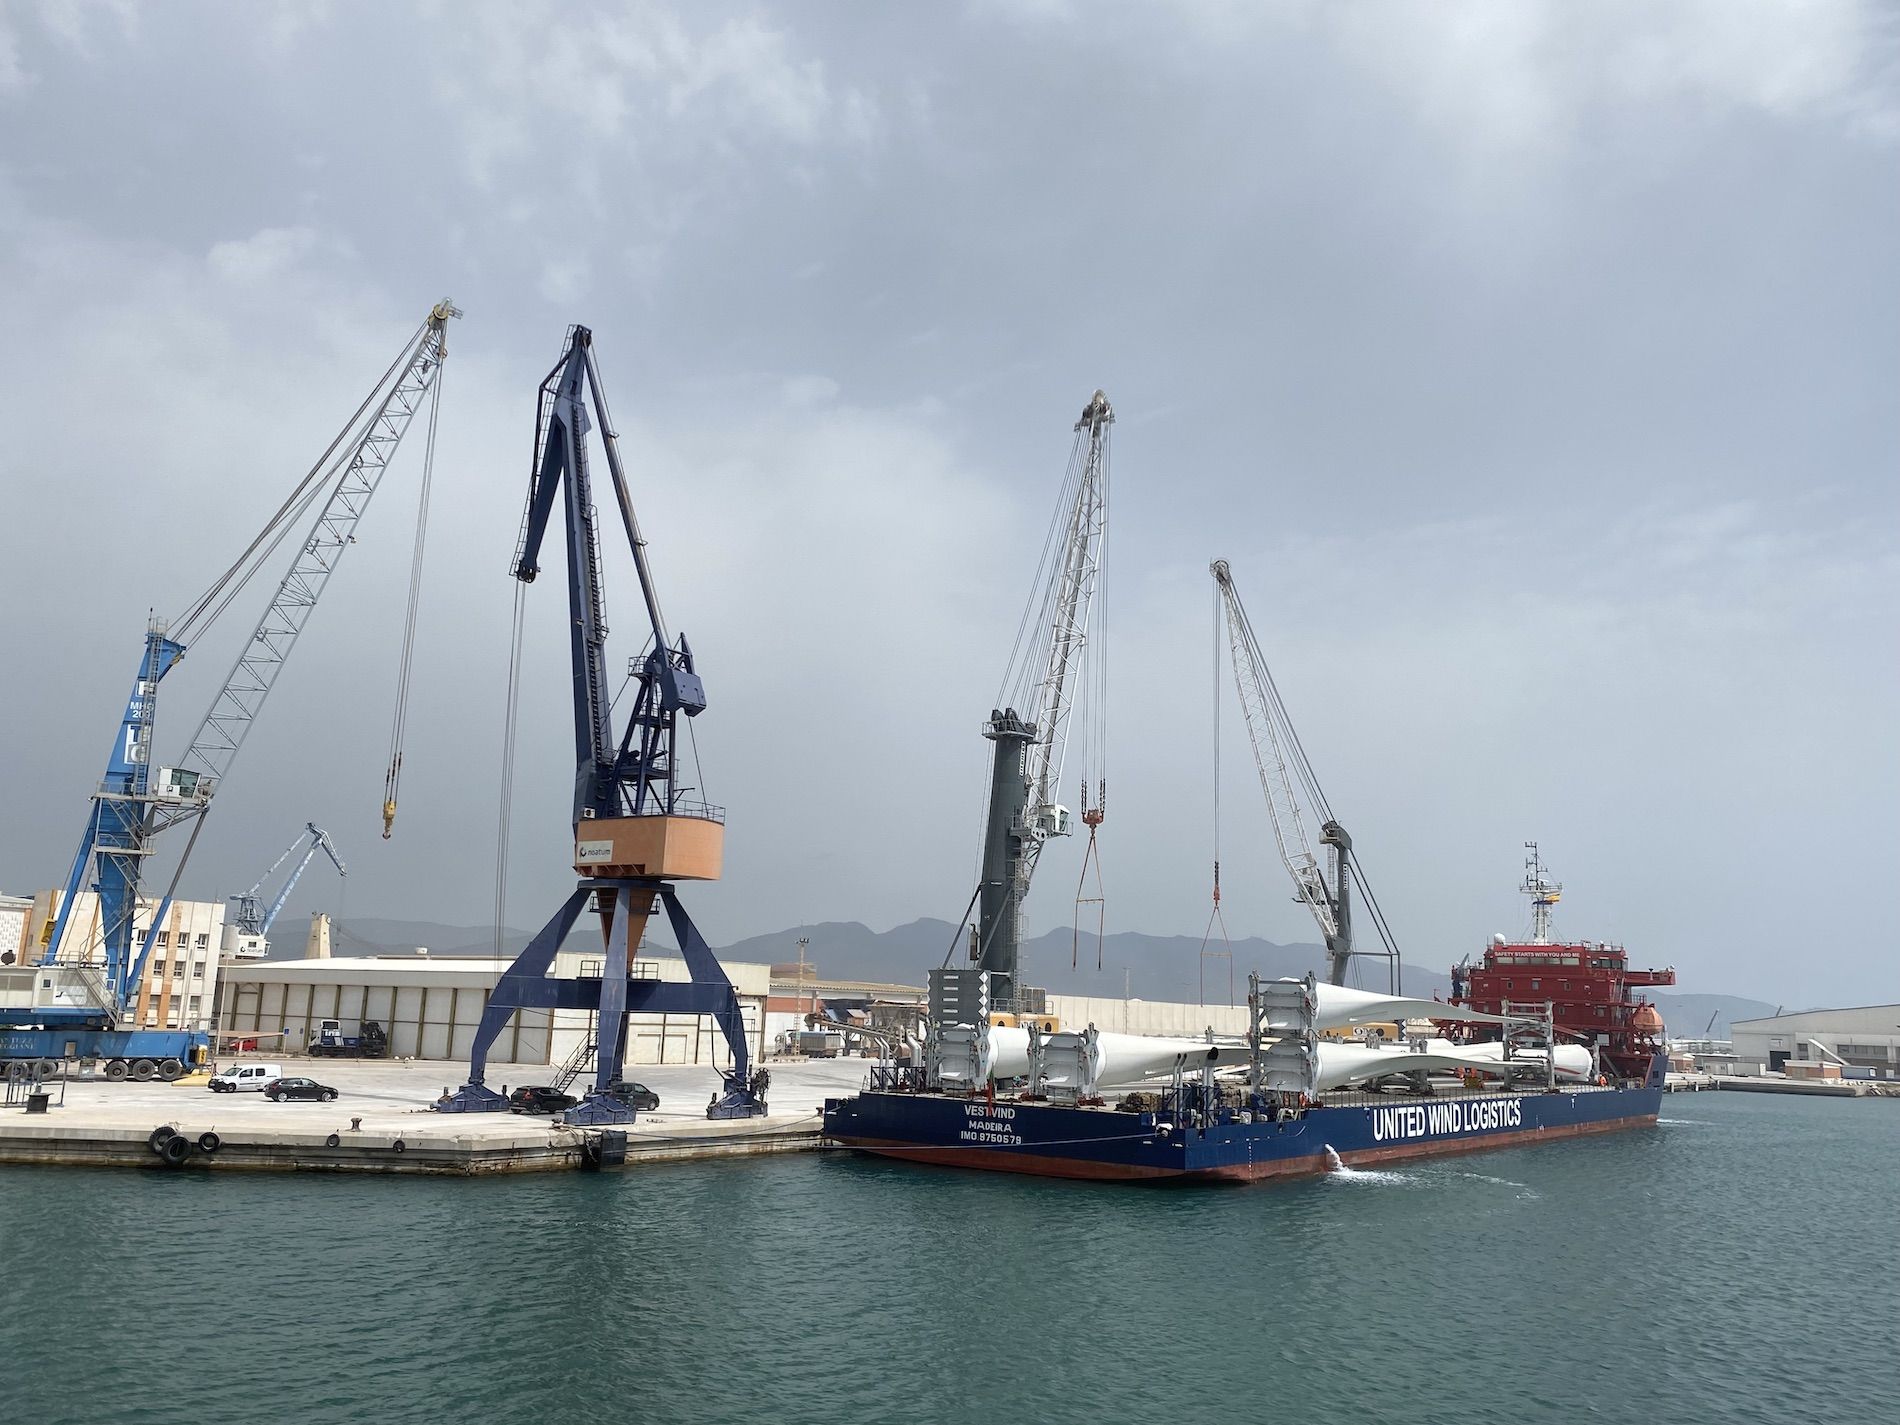 eolica carga palas eolicas en barco en puerto castellon